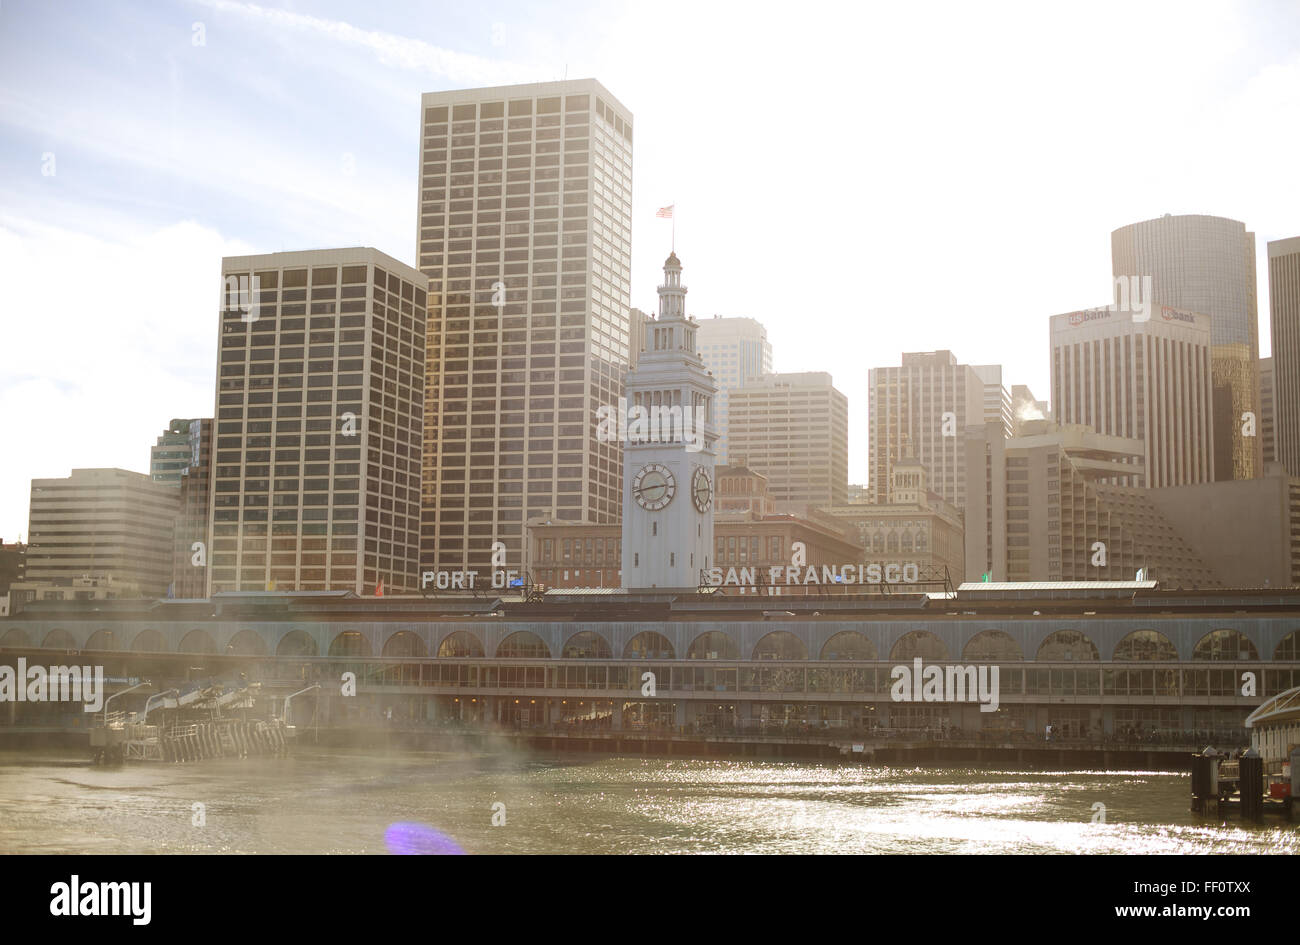 Vista dall'acqua del centro cittadino di San Francisco edifici lungo l'Embarcadero con il Ferry Building in primo piano. Foto Stock